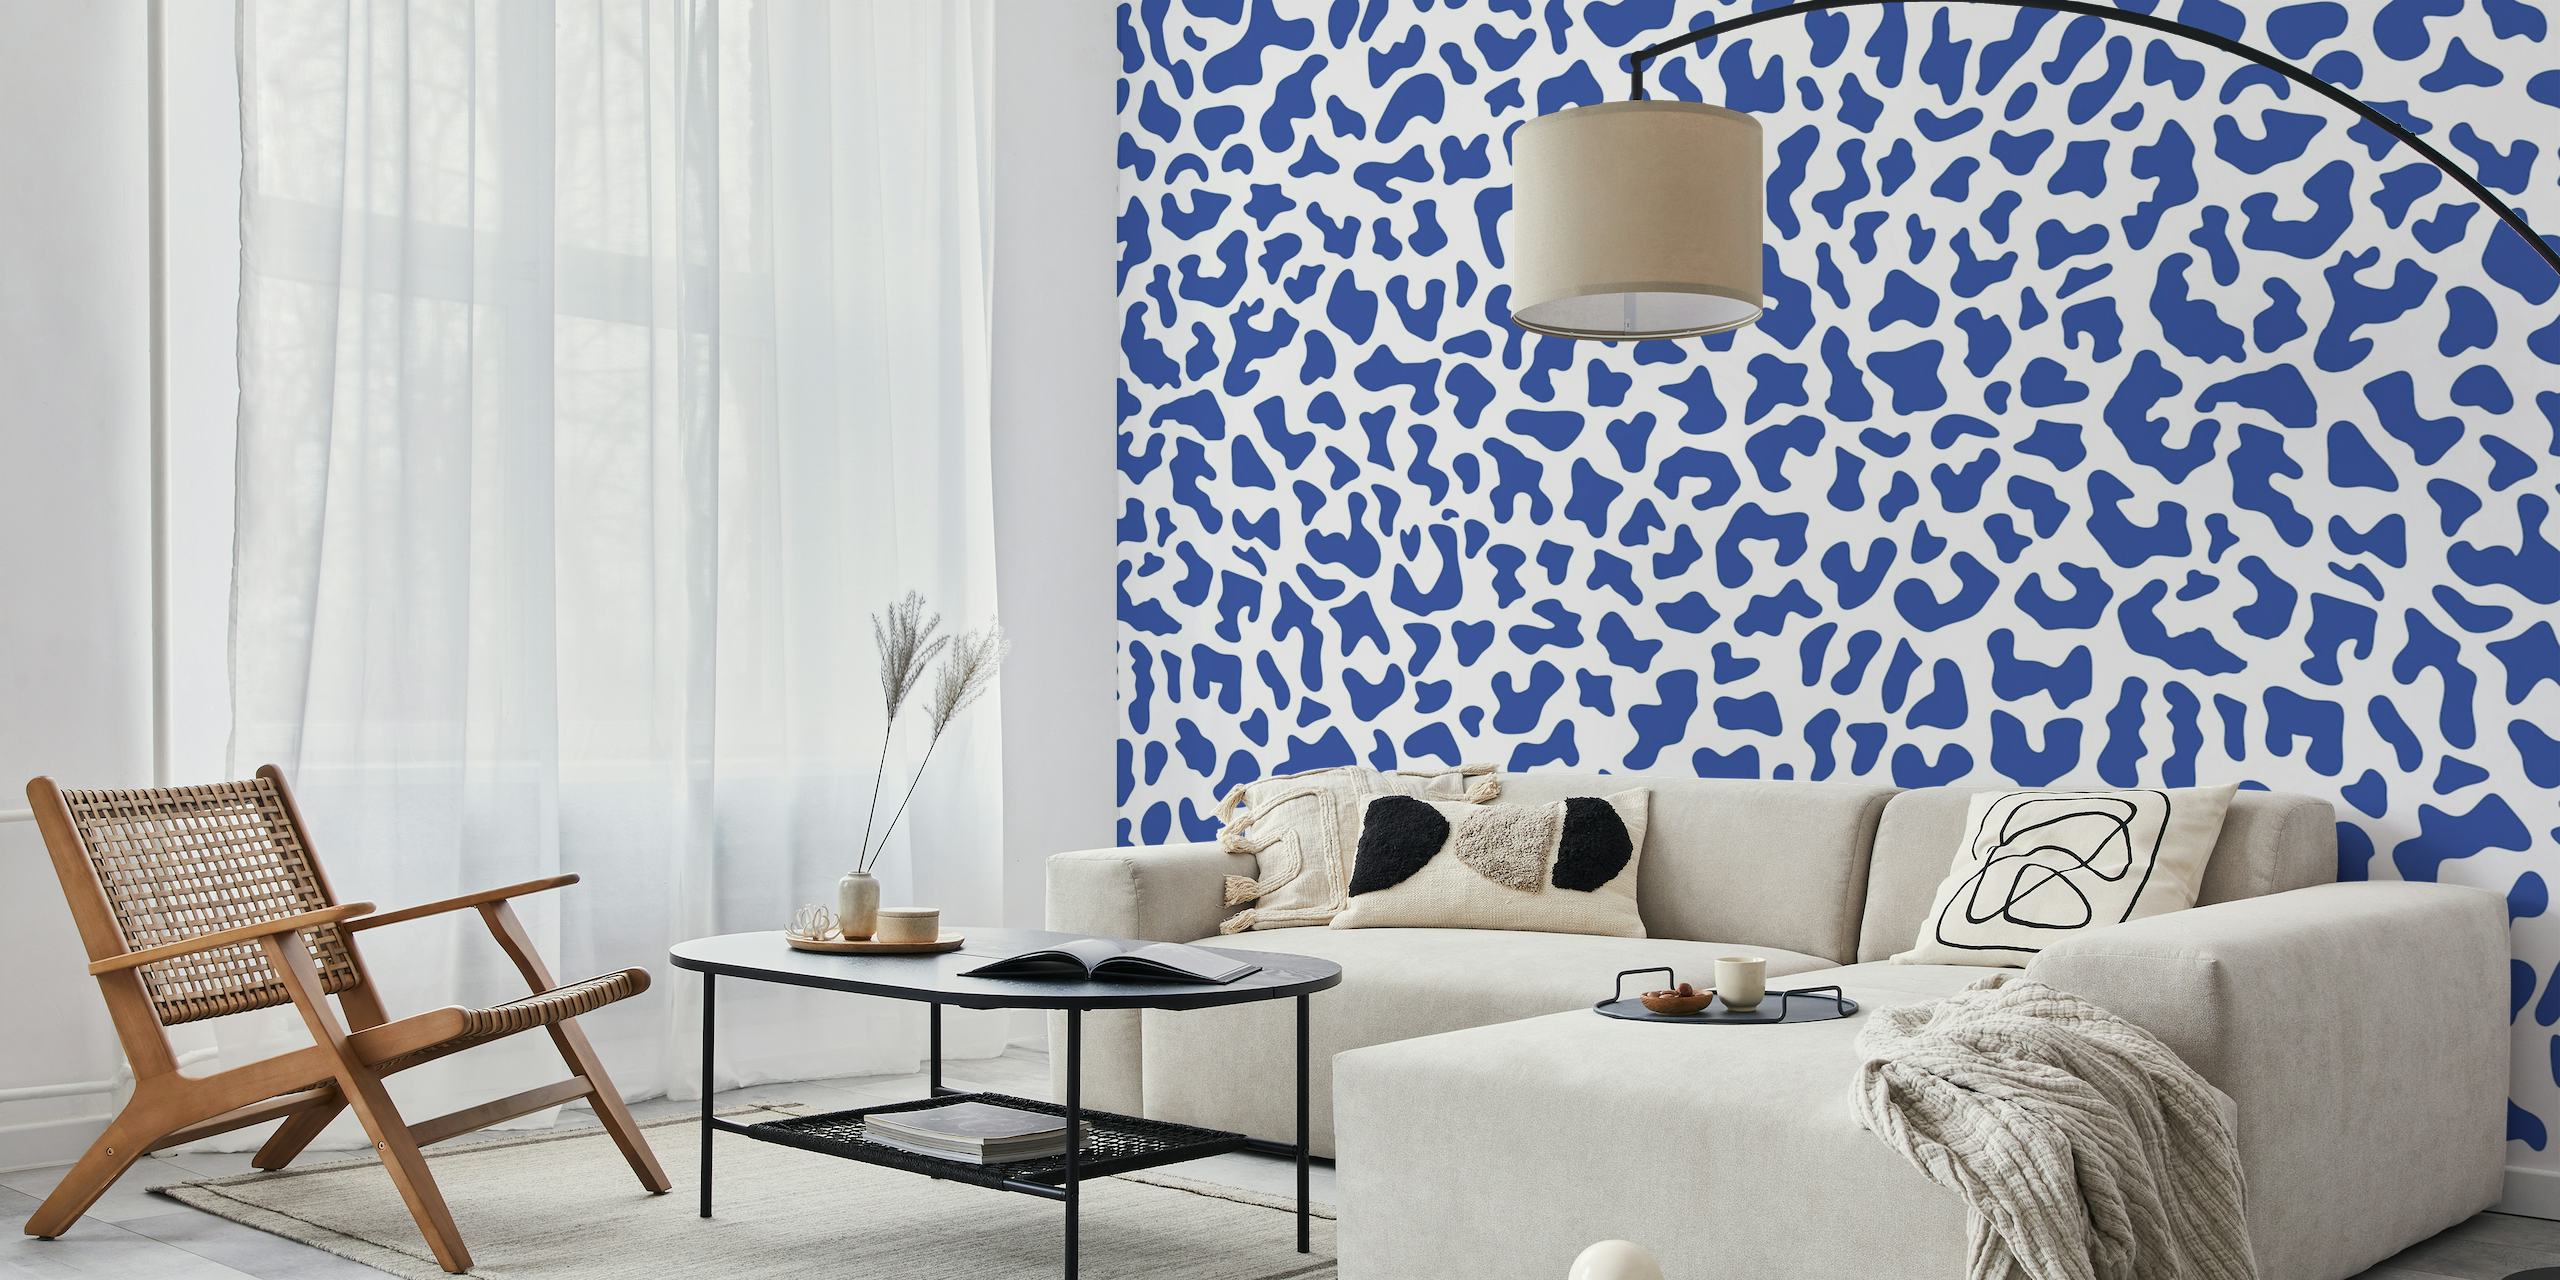 Décoration murale à imprimé léopard bleu et blanc